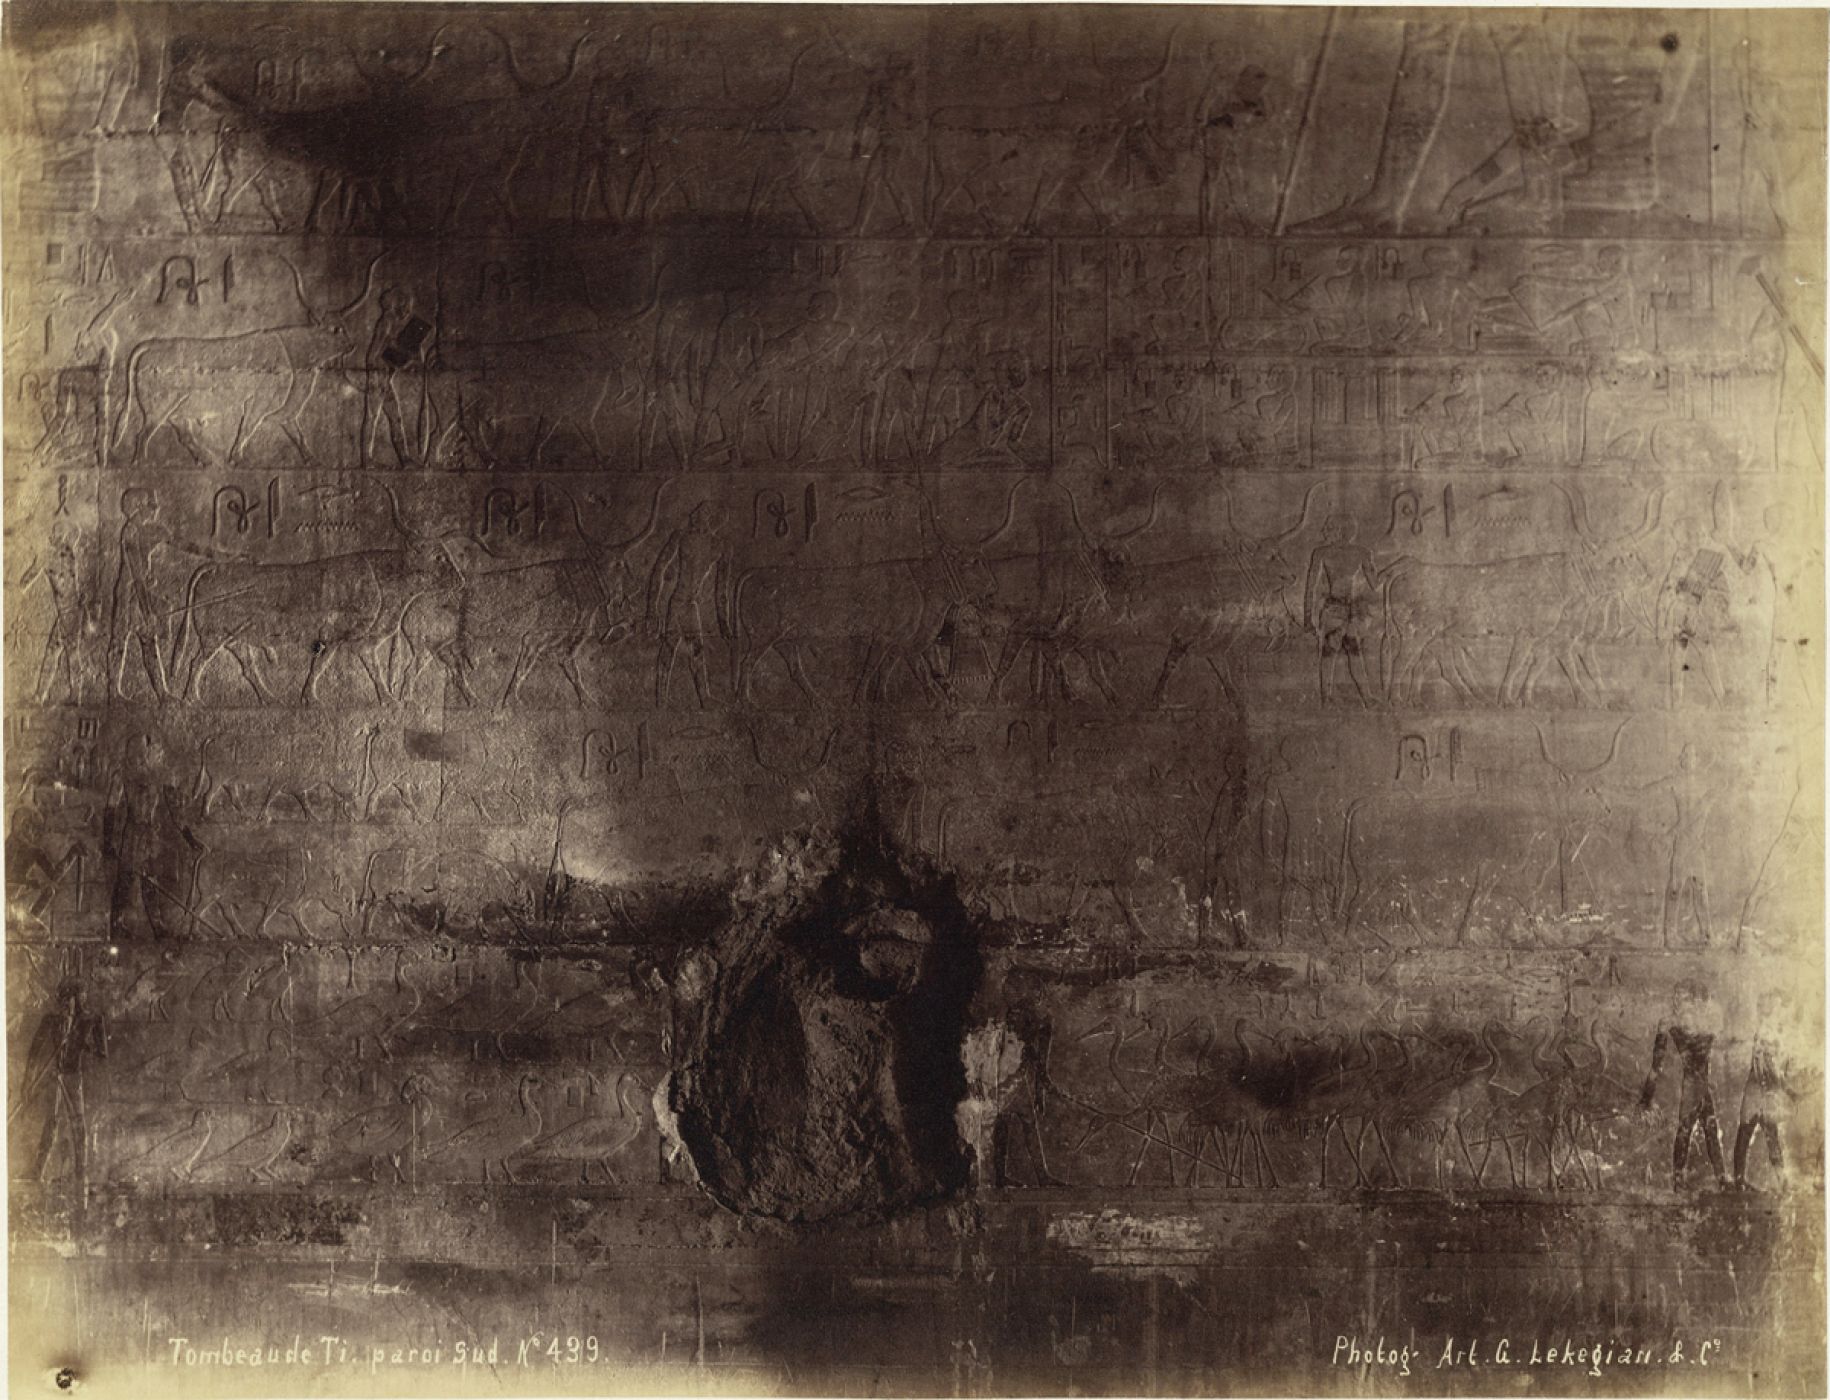 Gabriel Lekegian, “Tomb of Ti, South Wall N. 439”, 1890 ca.